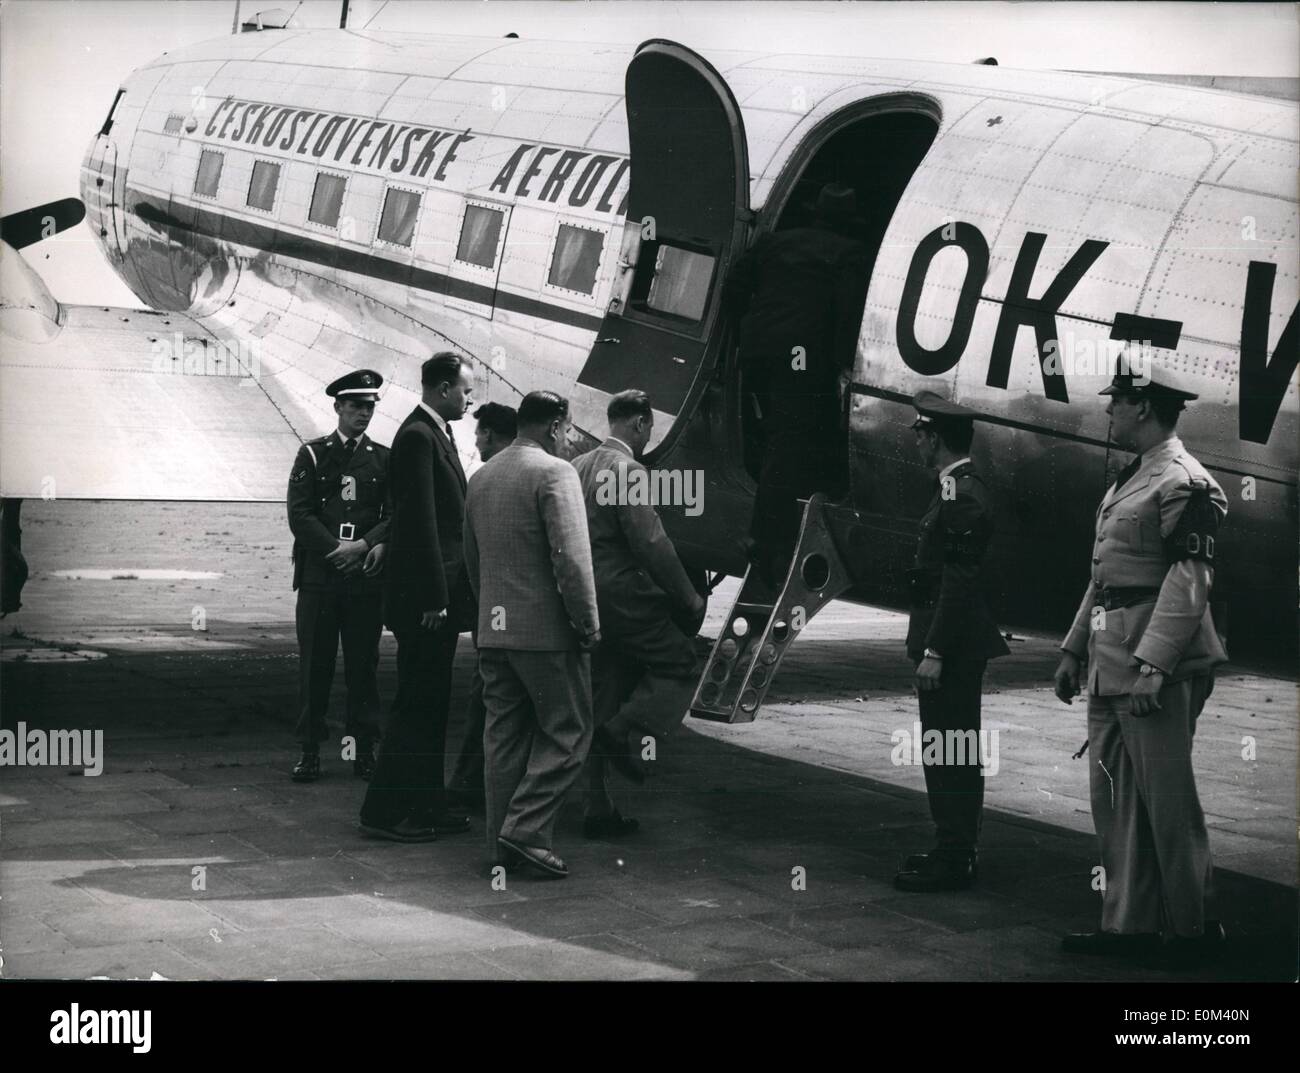 Mai 05, 1953 - L'aéronef Czecho-Slovakian, type DC-3, dans lequel un motif trouvé refuge dans la République fédérale allemande le 23 mars, s'est tourné vers les représentants du gouvernement tchèque à l'aéroport à-jour. Il a quitté pour Templehof Frag alors. L'avion est arrivé à Tempelhof de Frankfort et était un des représentants et des fonctionnaires américains dans l'après-midi. Des responsables américains ont dit qu'il n'y a pas de connexion entre l'appareil et de la récente libération de citoyen américain William une prison tchèque. Notre photo montre l'équipage tchèque de l'embarquement. Banque D'Images